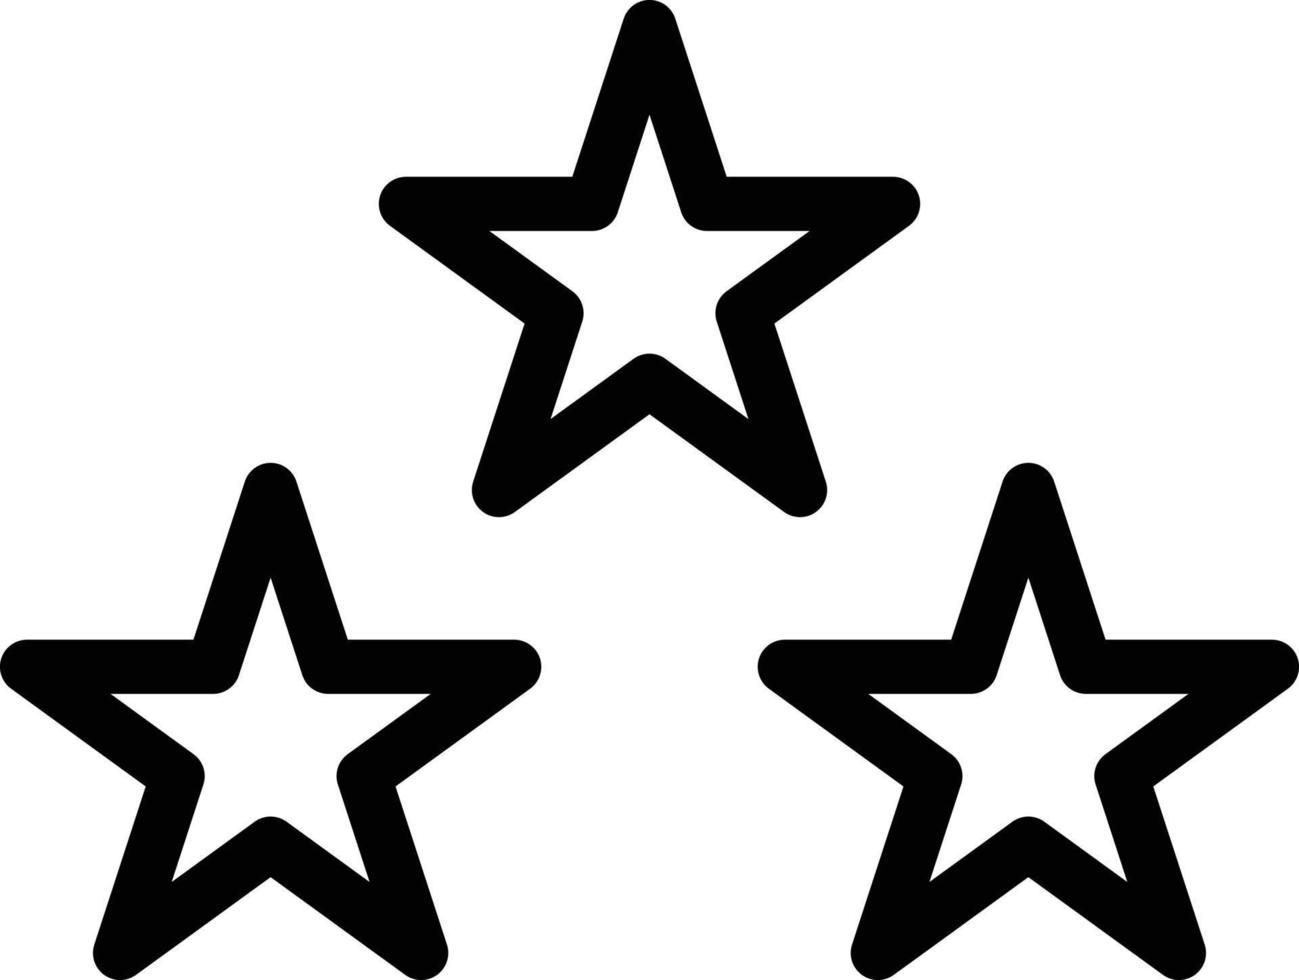 étoiles illustration vectorielle sur un fond. symboles de qualité premium. icônes vectorielles pour le concept et la conception graphique. vecteur